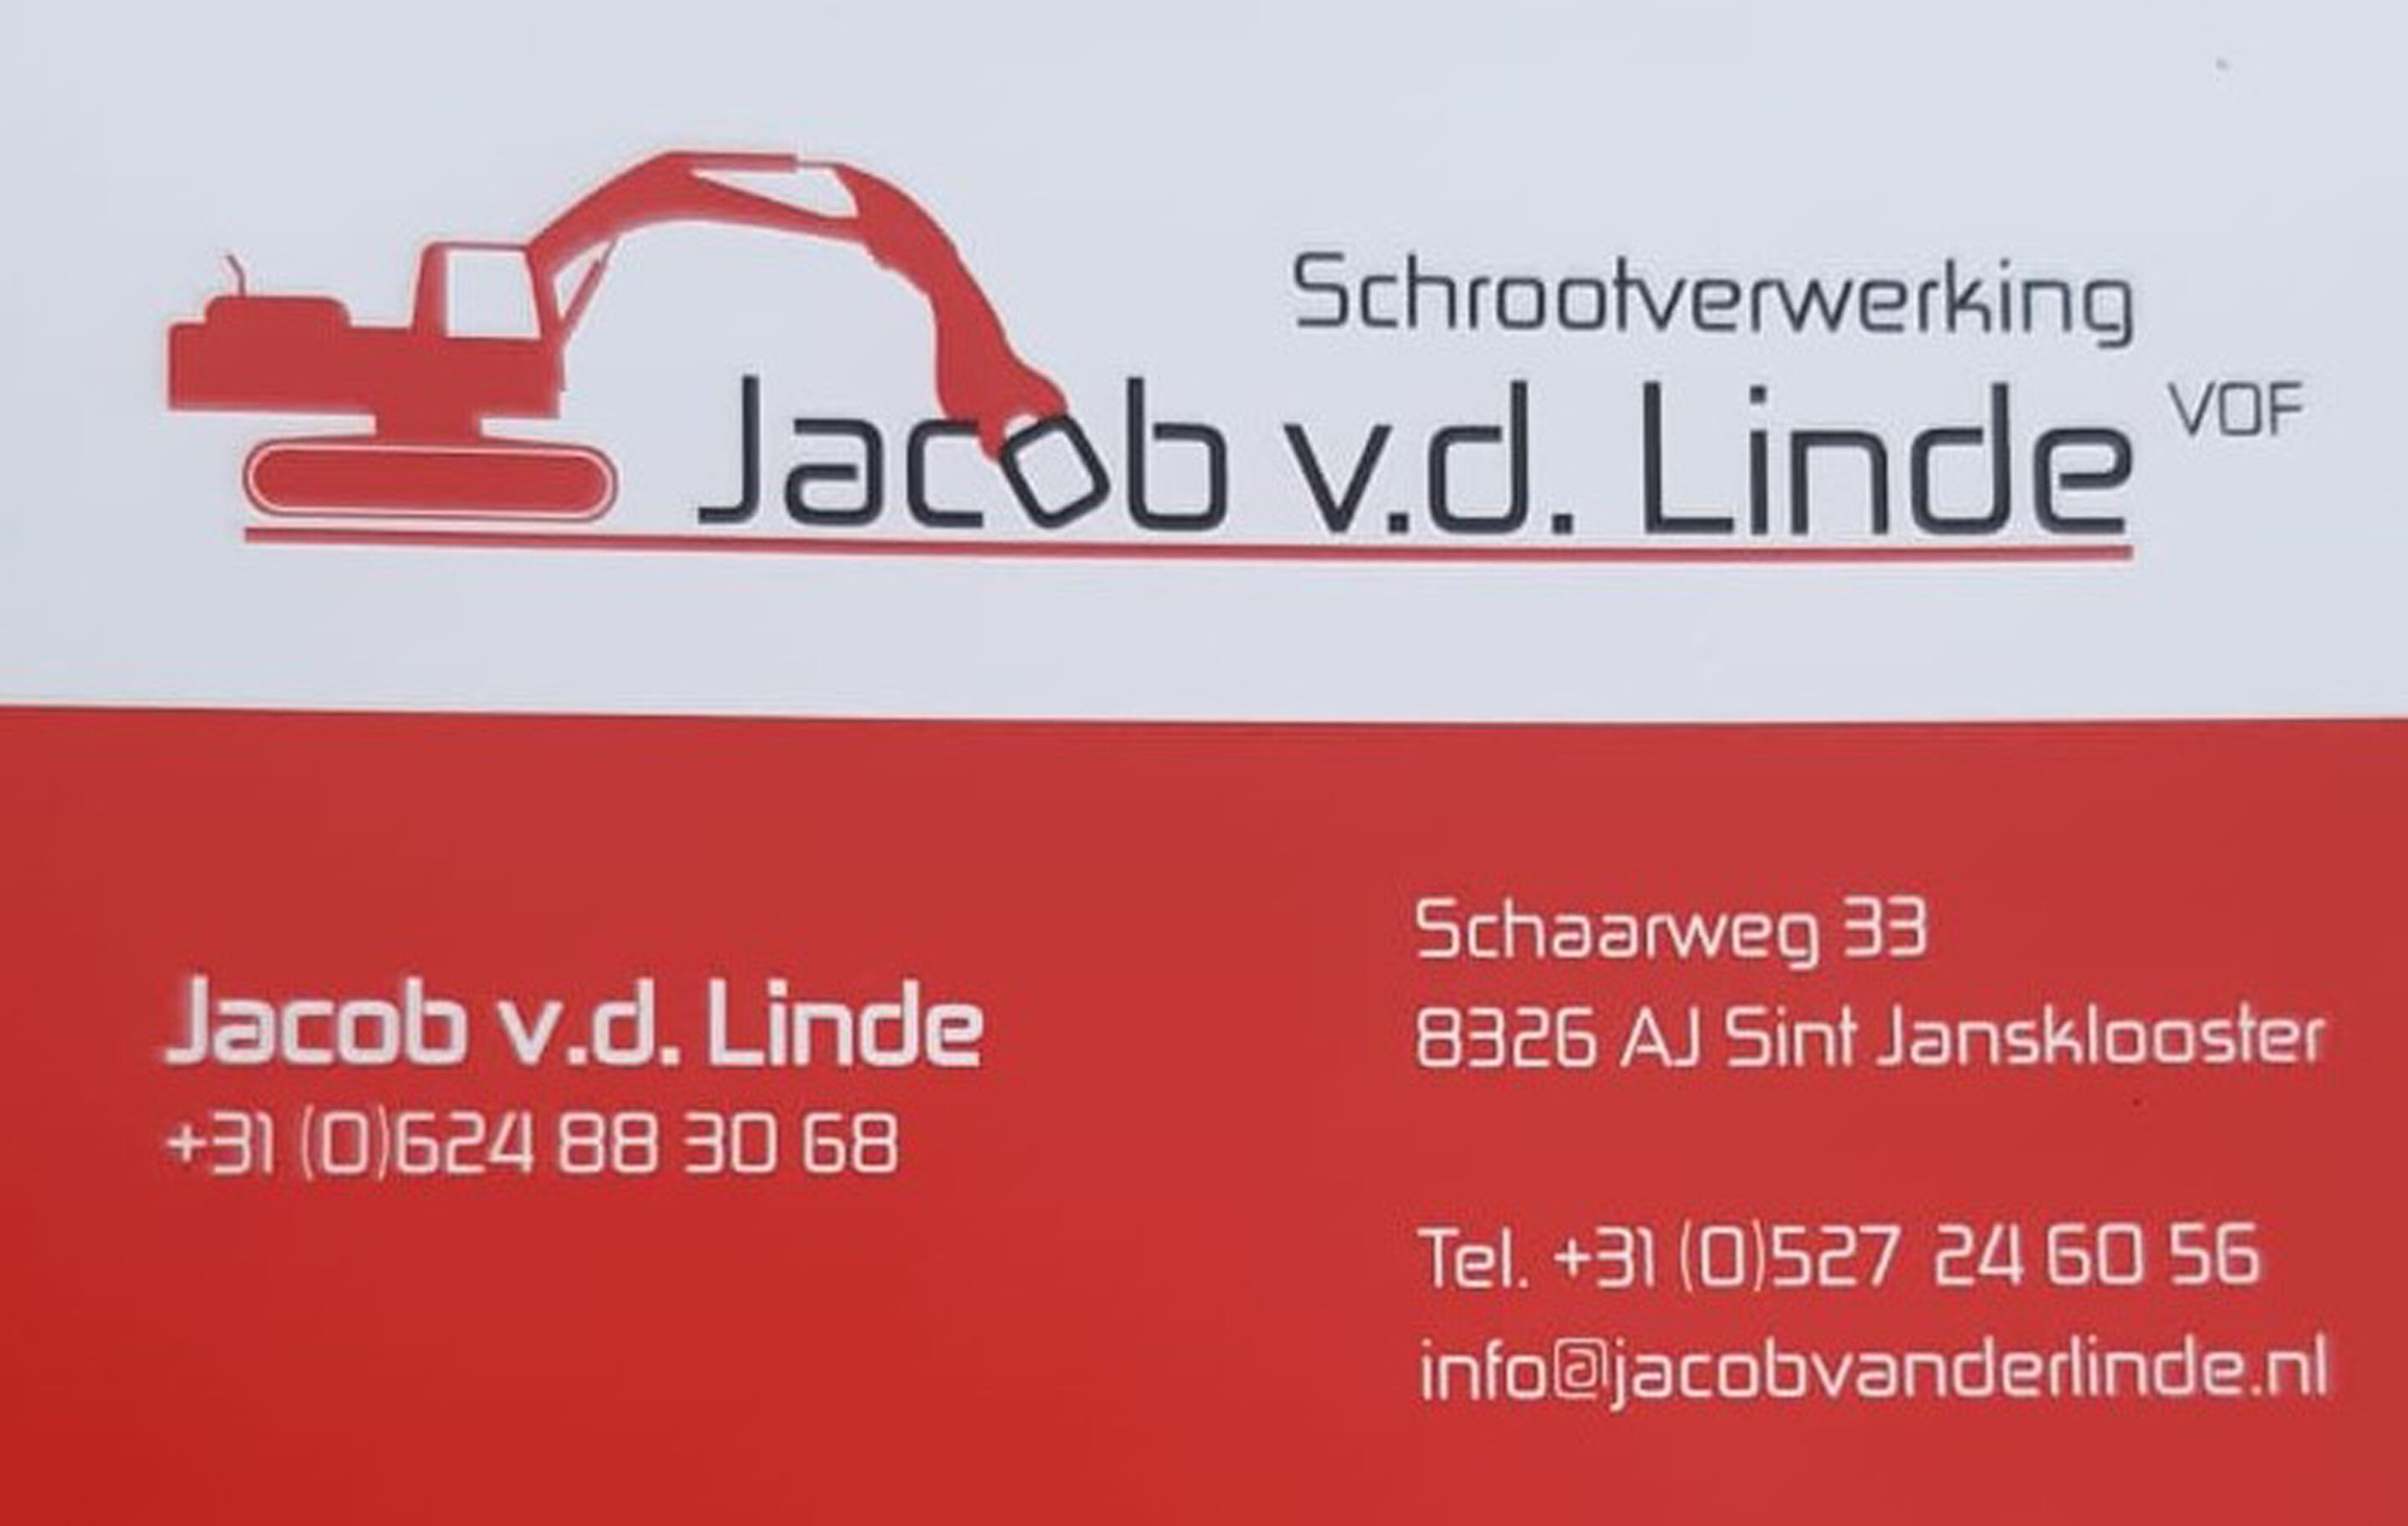 Jacob v.d. Linde Schrootverwerking